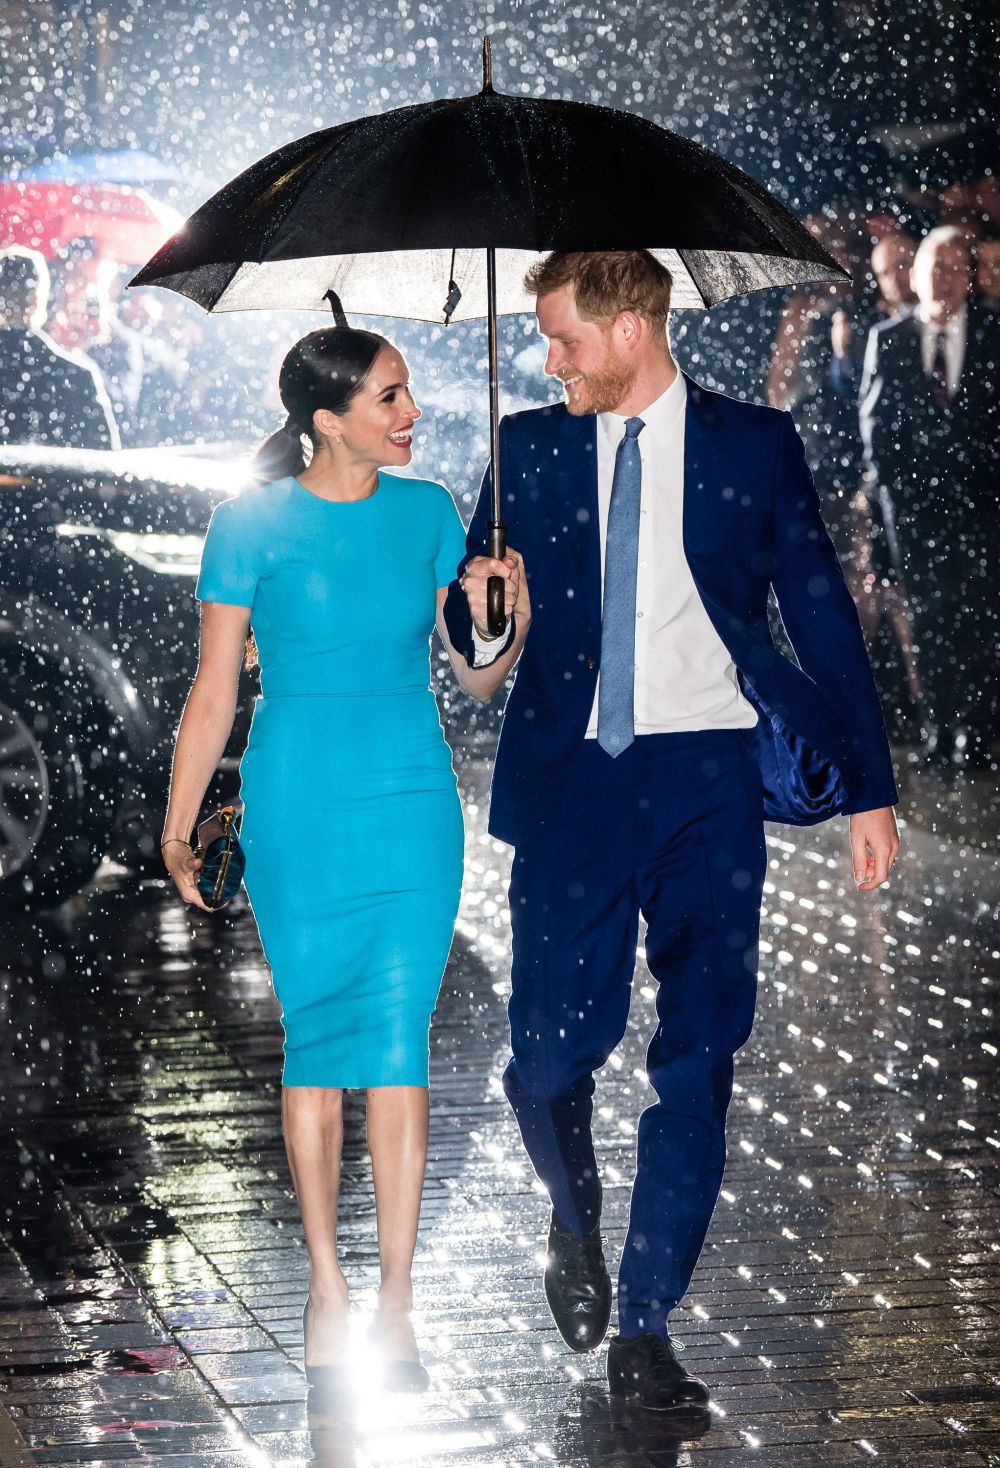 Bức hình chụp hai vợ chồng Hoàng tử Harry tham dự Endeavour Fund Awards ở Mansion House, London, nước Anh xứng đáng nằm trong tốp những bức hình đẹp nhất năm 2020. (Nguồn: Pinterest)